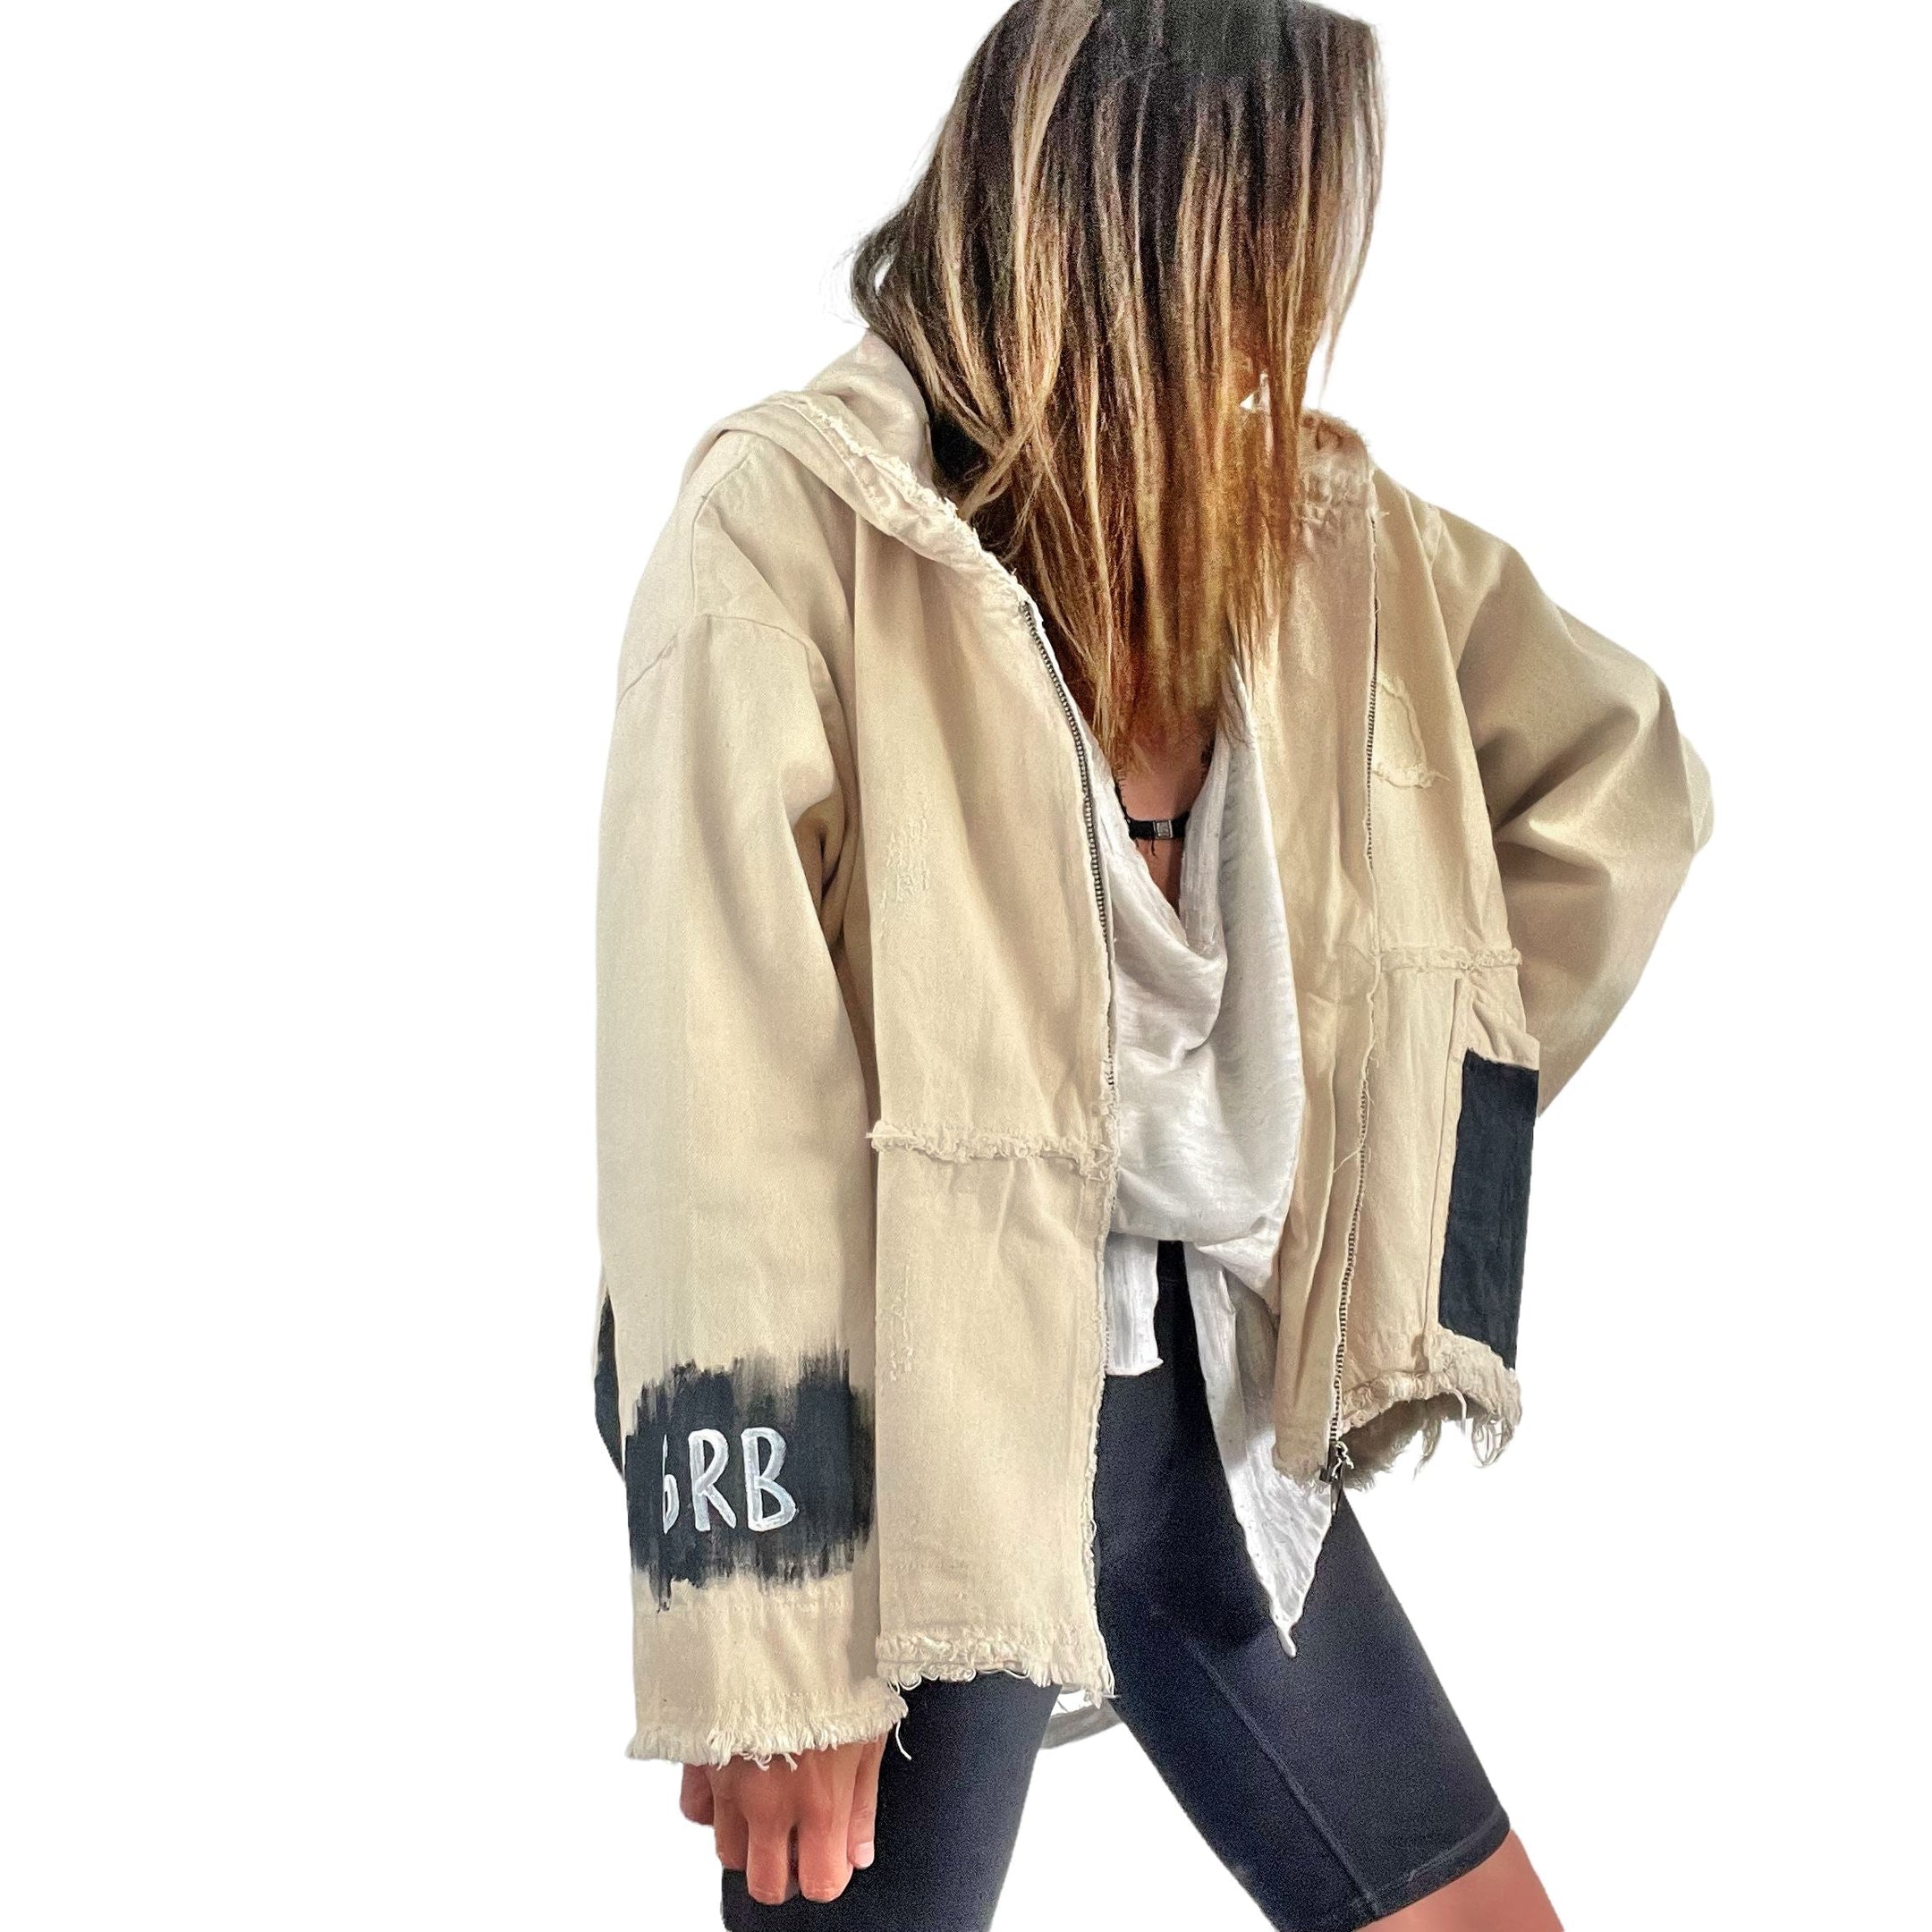 Buy Basic But Personalized' Ivory Denim Jacket by Wren + Glory